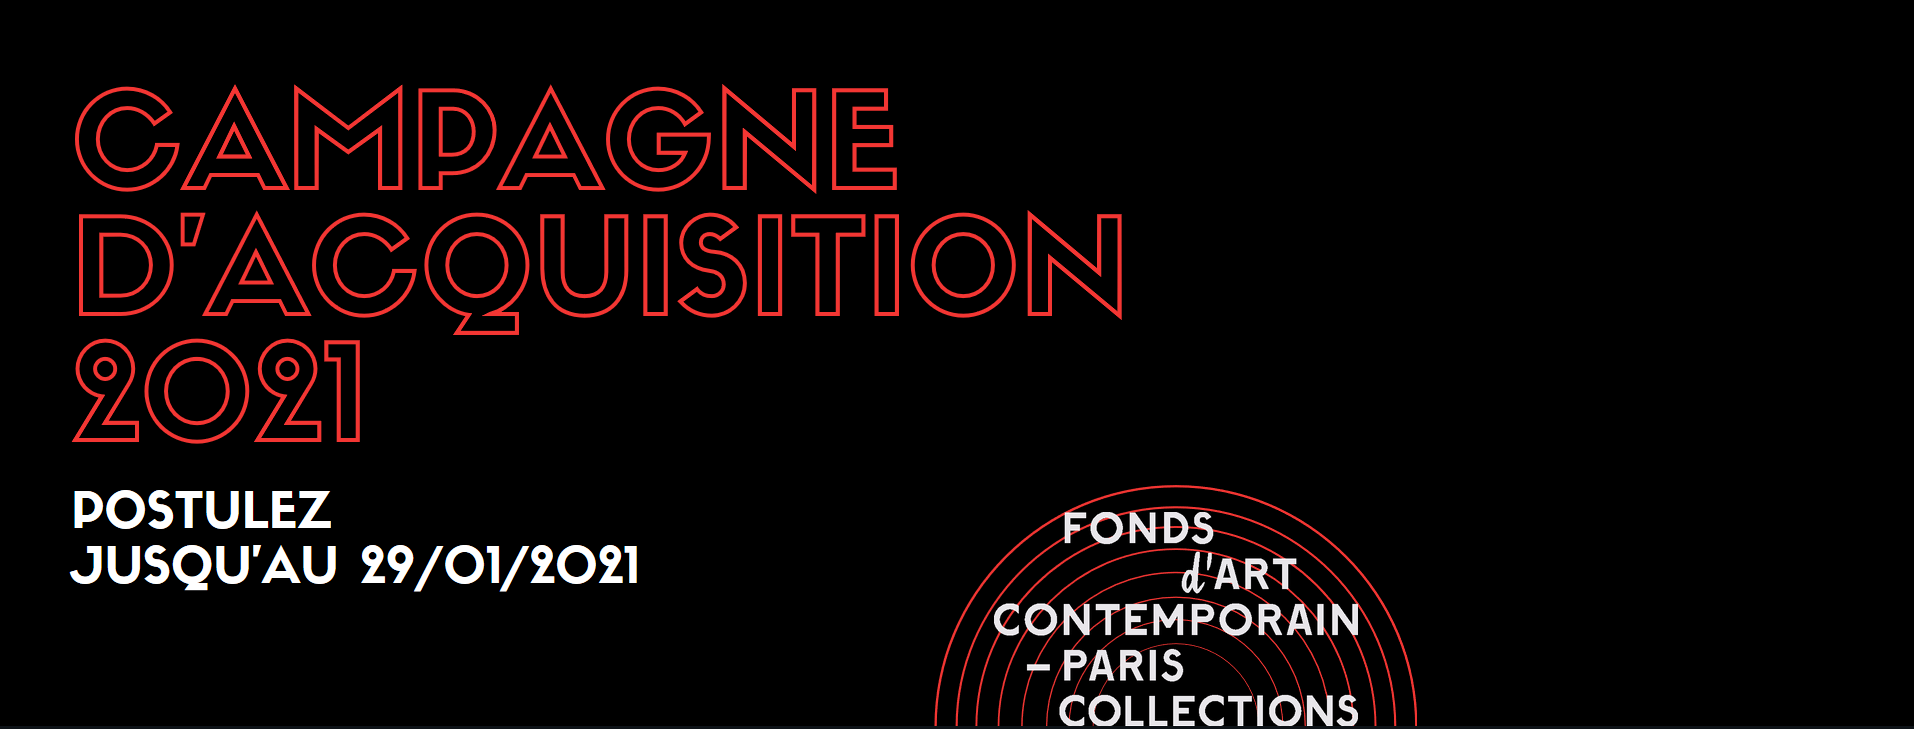 CAMPAGNE D’ACQUISITION 2021 DU FONDS D’ART CONTEMPORAIN – PARIS COLLECTIONS